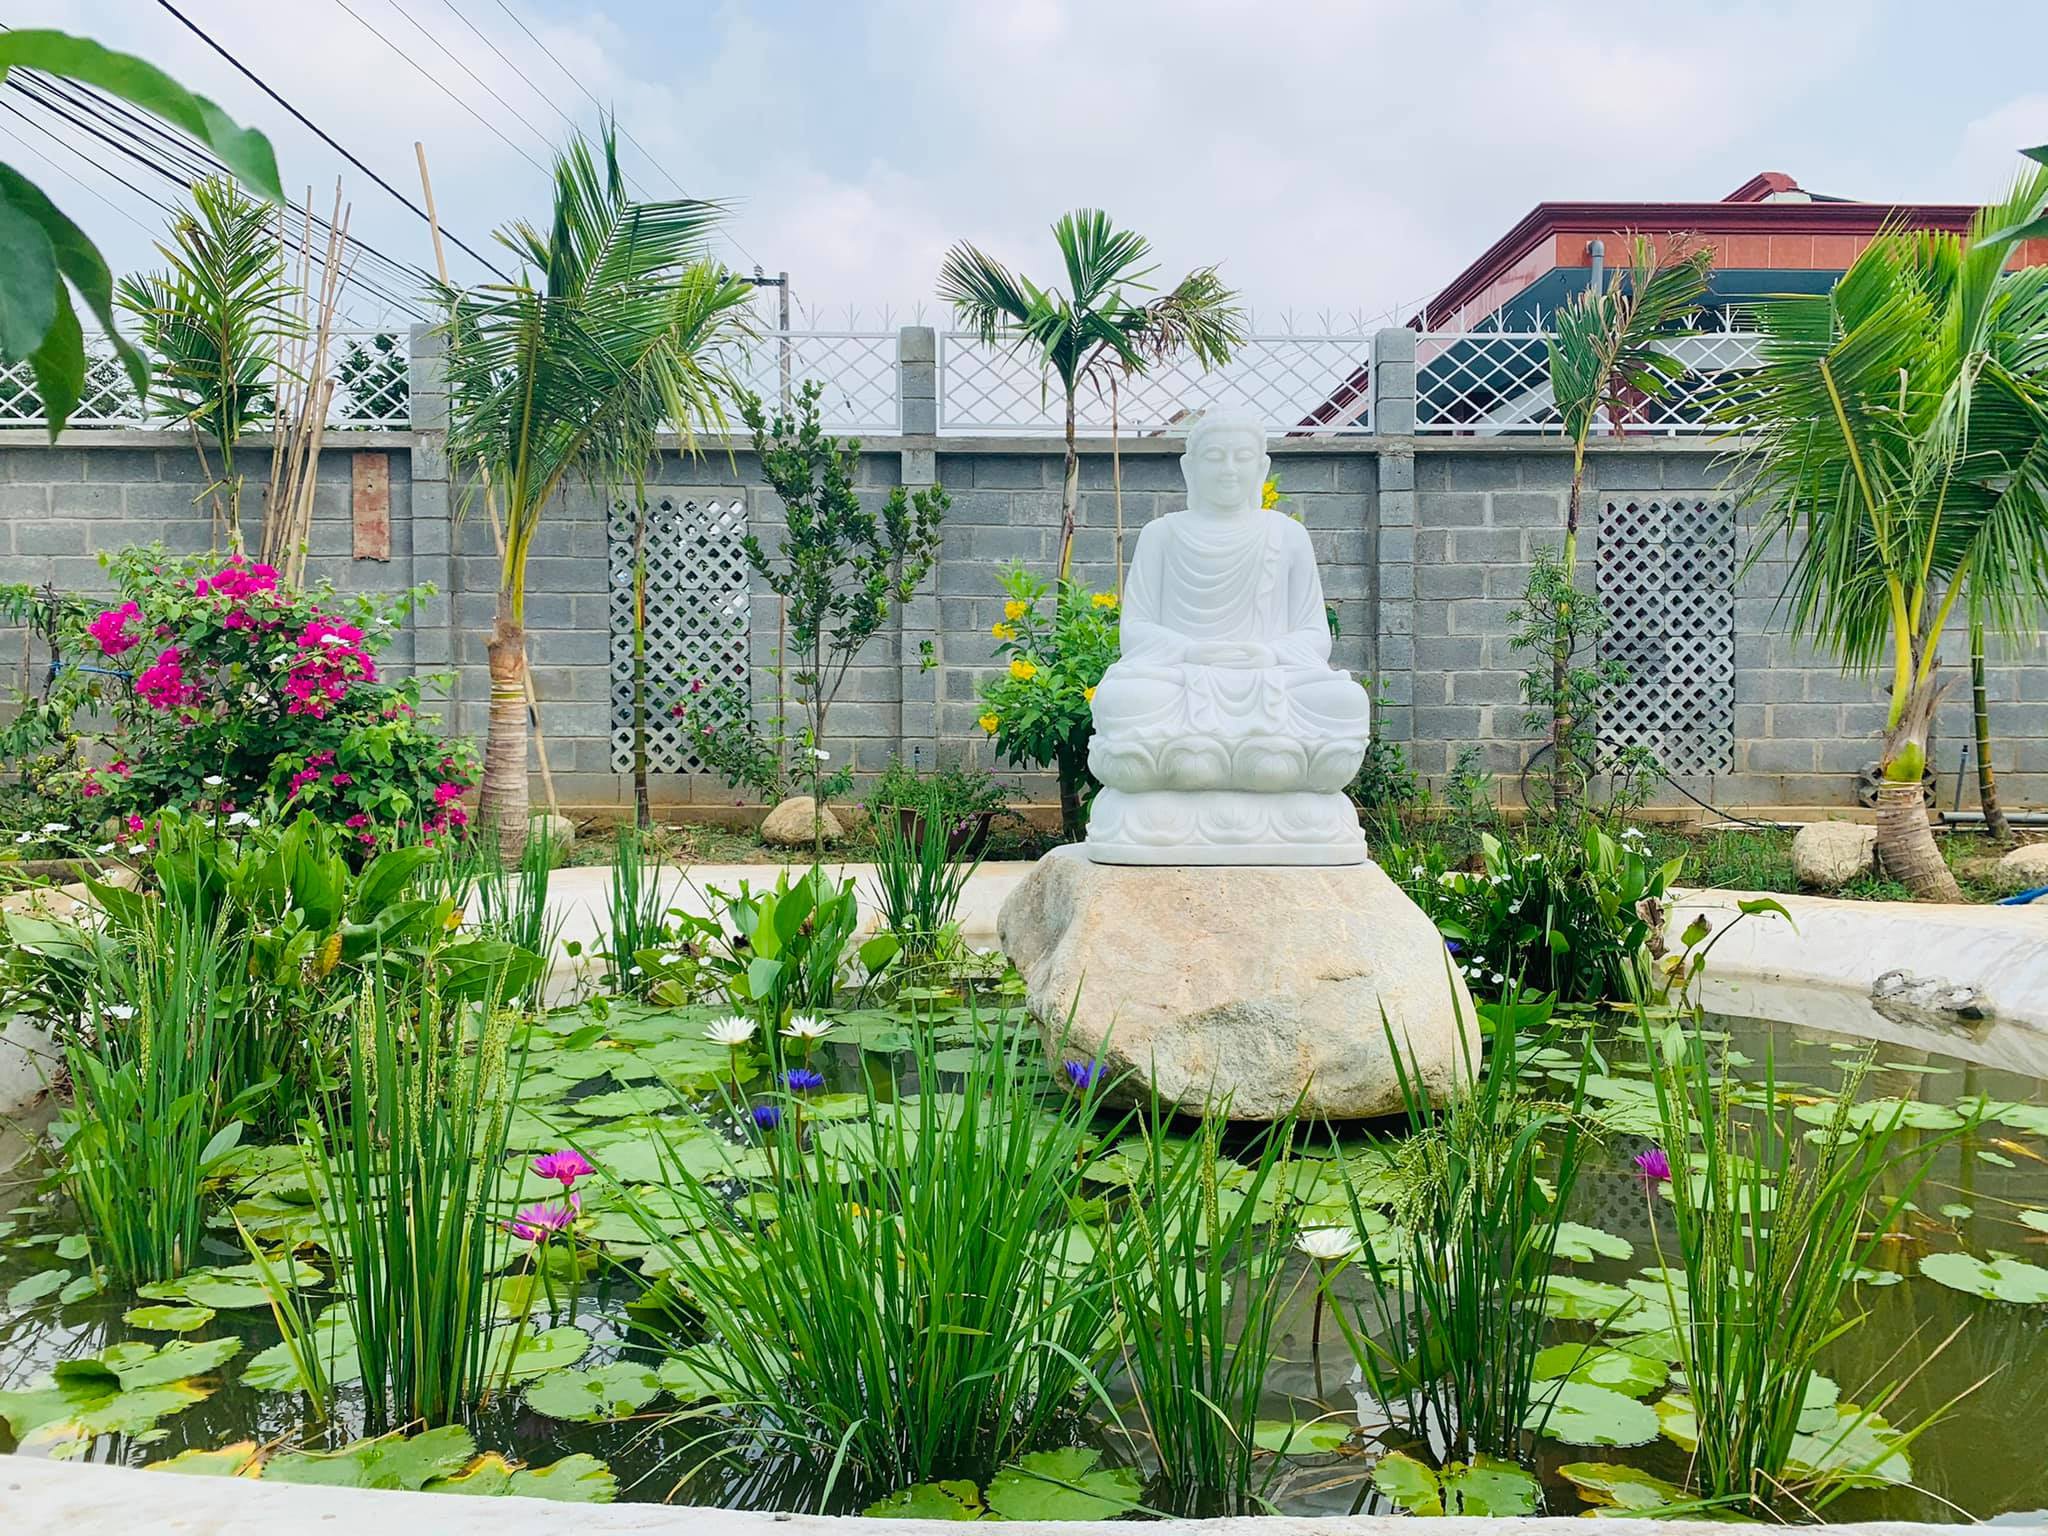 Khu vườn 720m2 đẹp như resort thu nhỏ người chồng tặng vợ ở Đồng Nai - 5